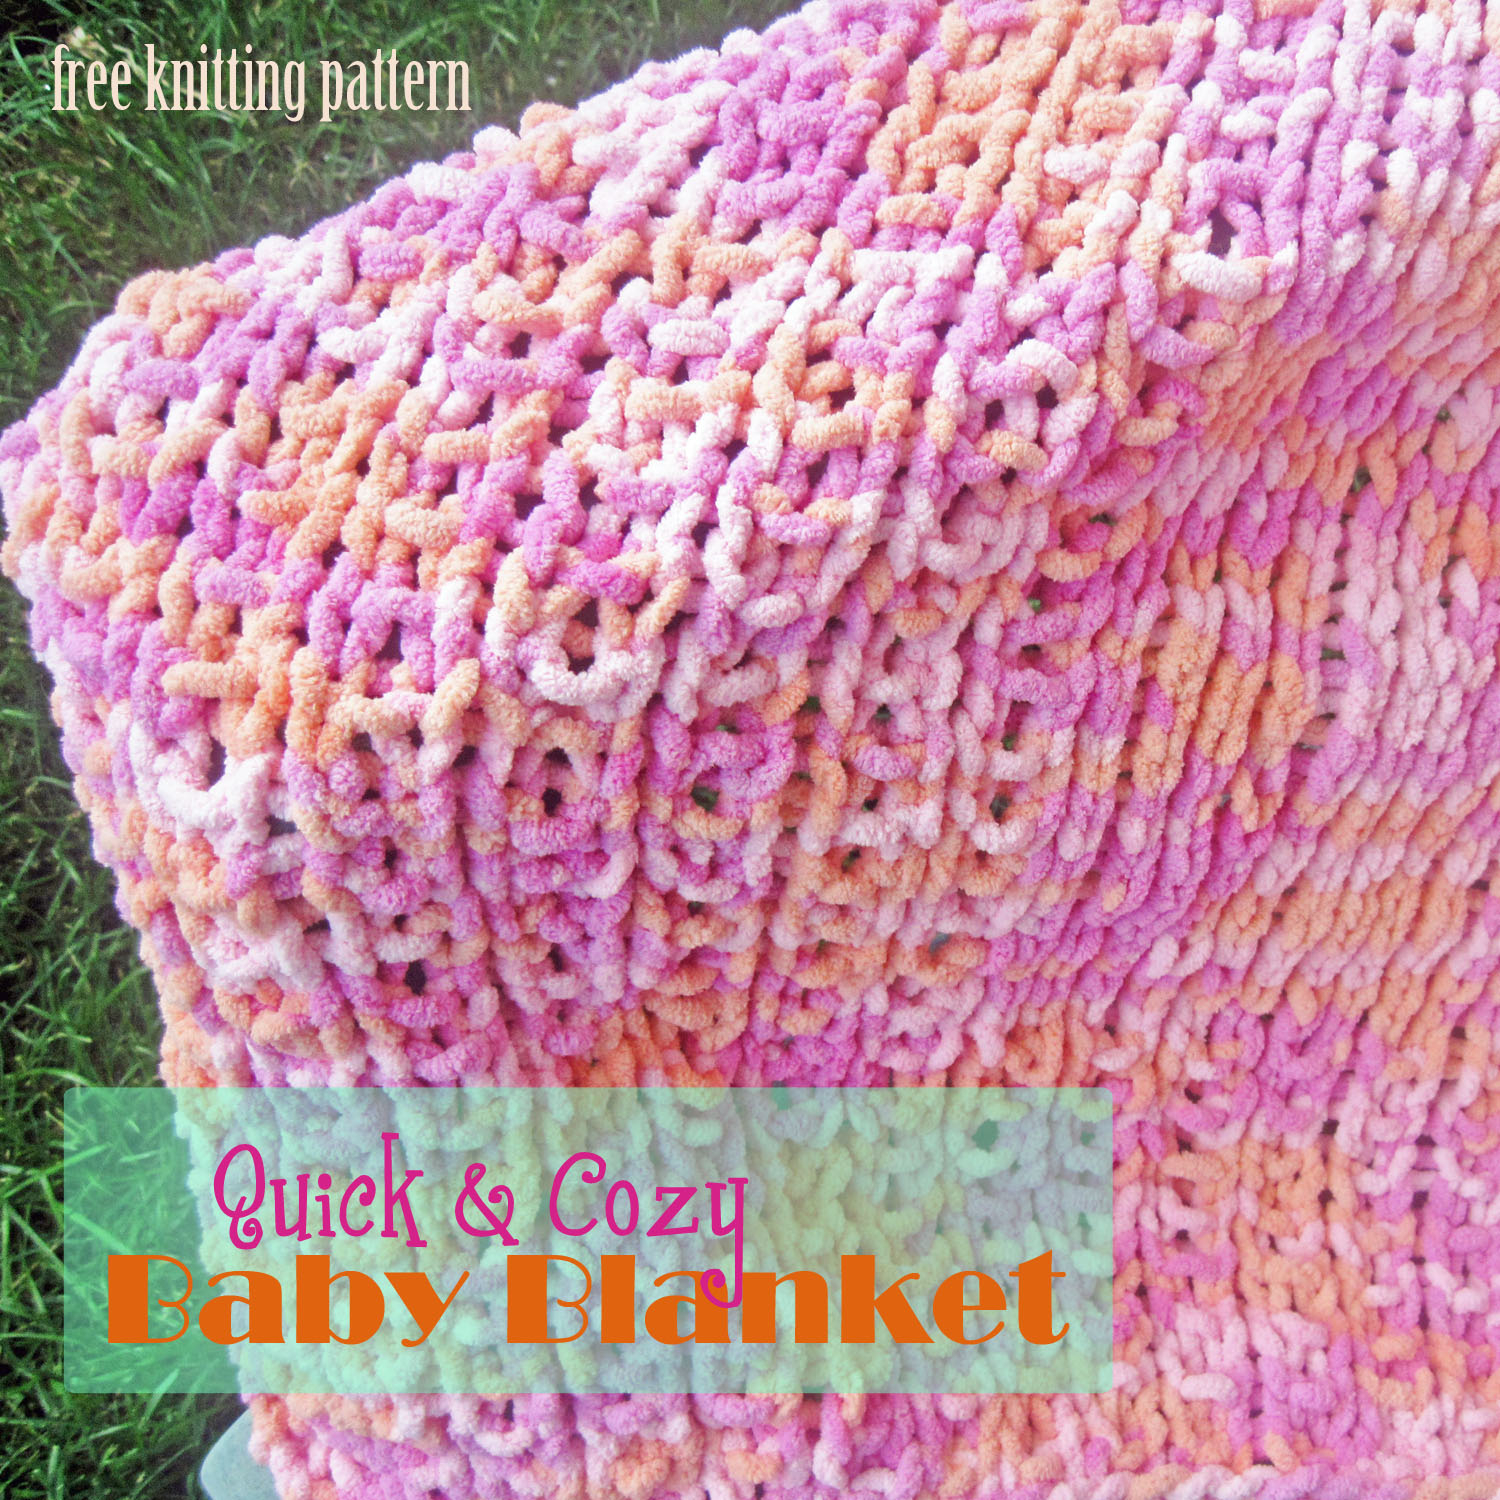 Easy Knitting Pattern For Baby Blanket Ba Blanket Knitting Patterns For Us 5 Intheloopknitting Easy Ba